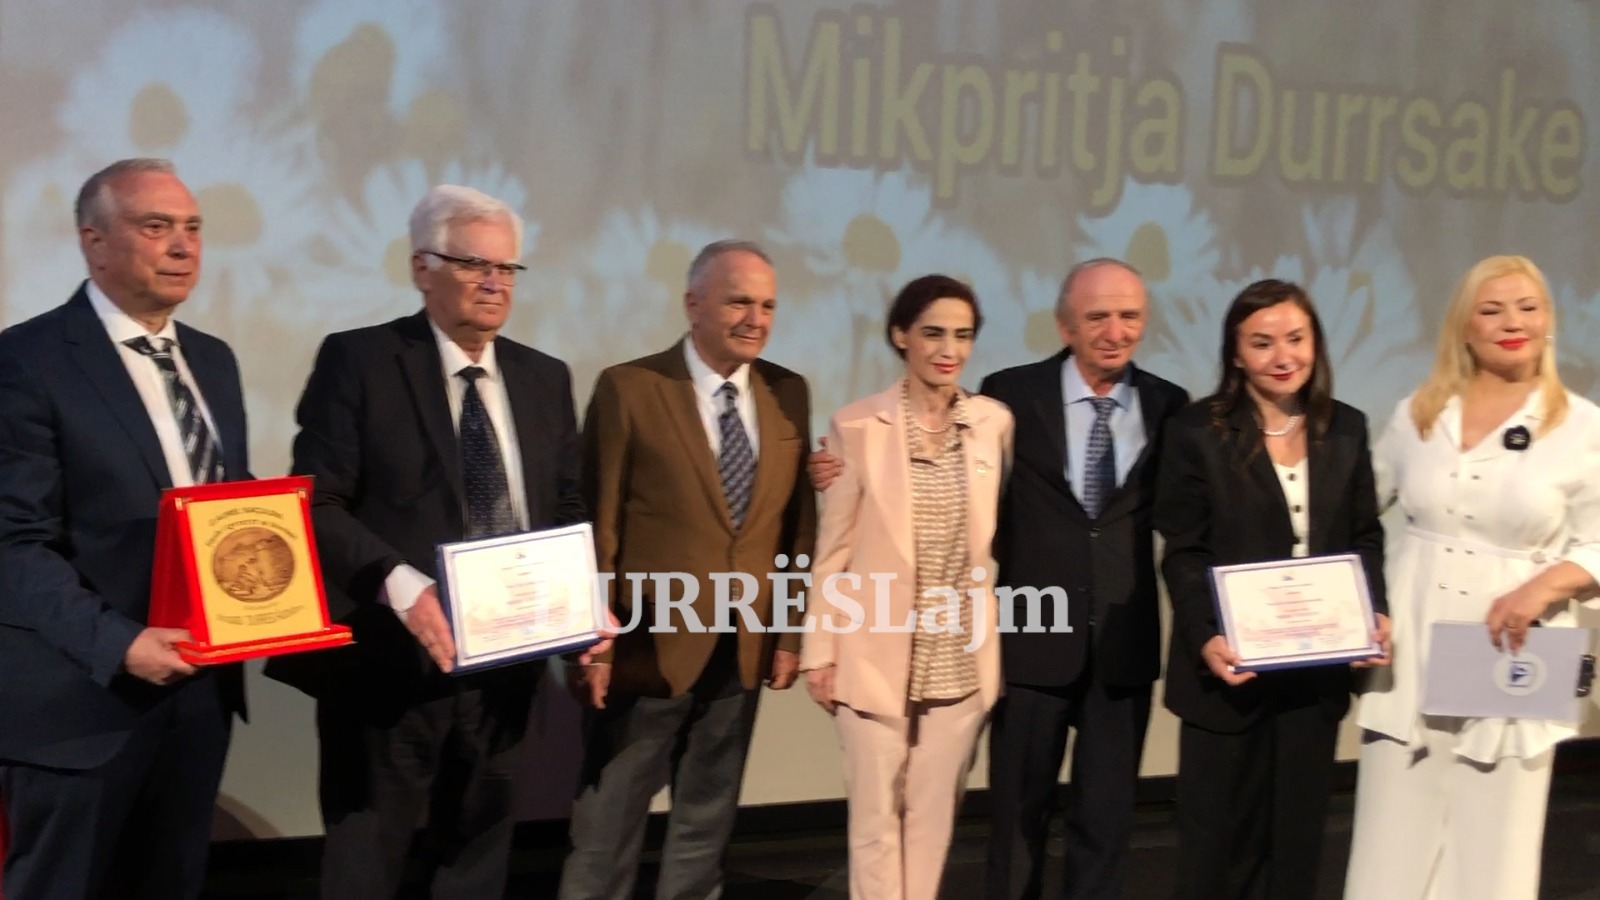 “Mikpritja durrsake”, nderohen me tituj 3 figura të njohura të qytetit të Durrësit (VIDEO)